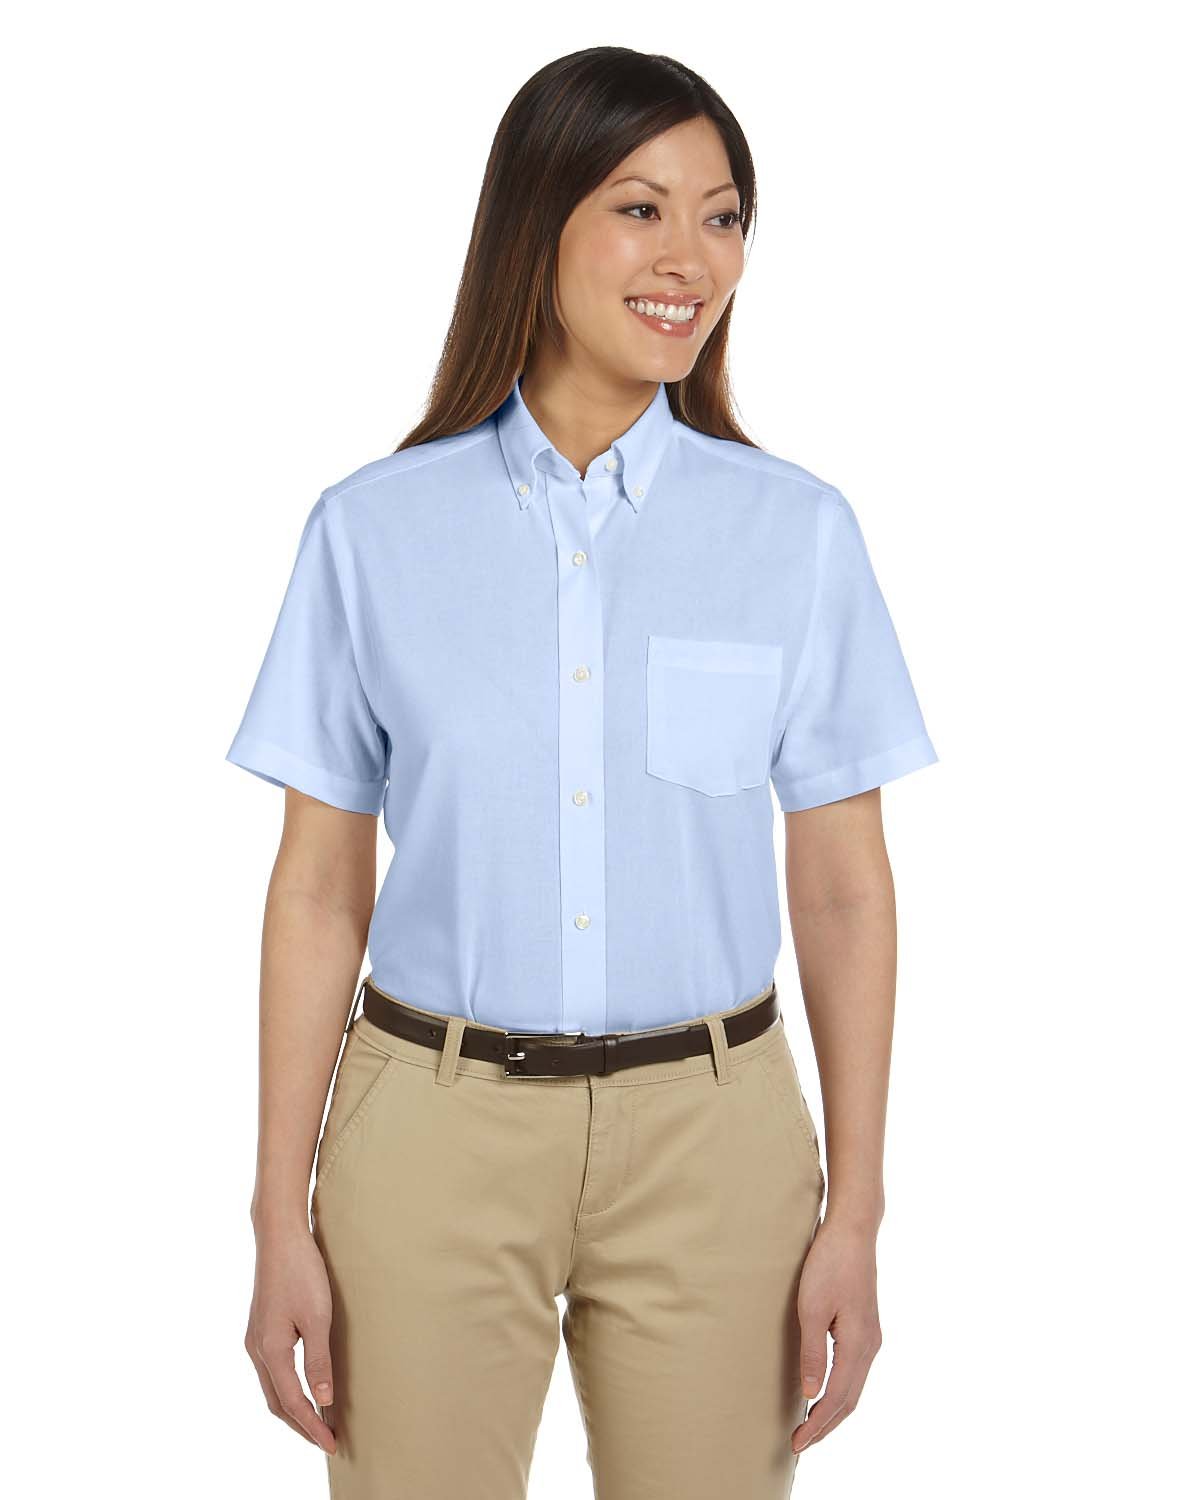 Van Heusen Ladies Short Sleeve Wrinkle Resistant Oxford Shirt